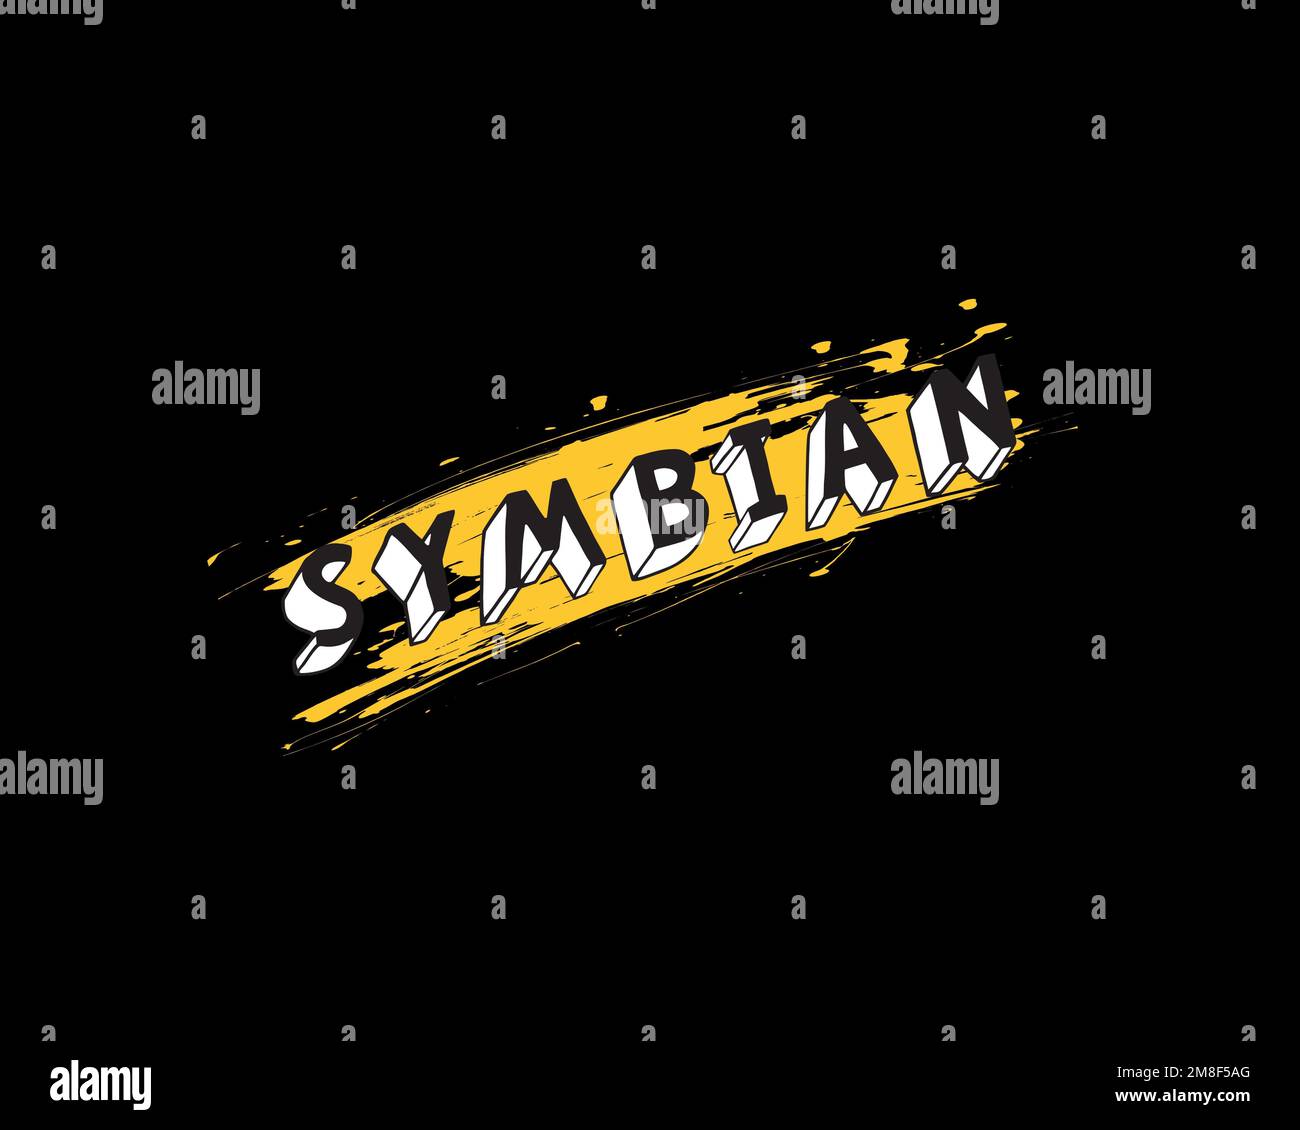 Symbian Foundation, rotated logo, black background Stock Photo